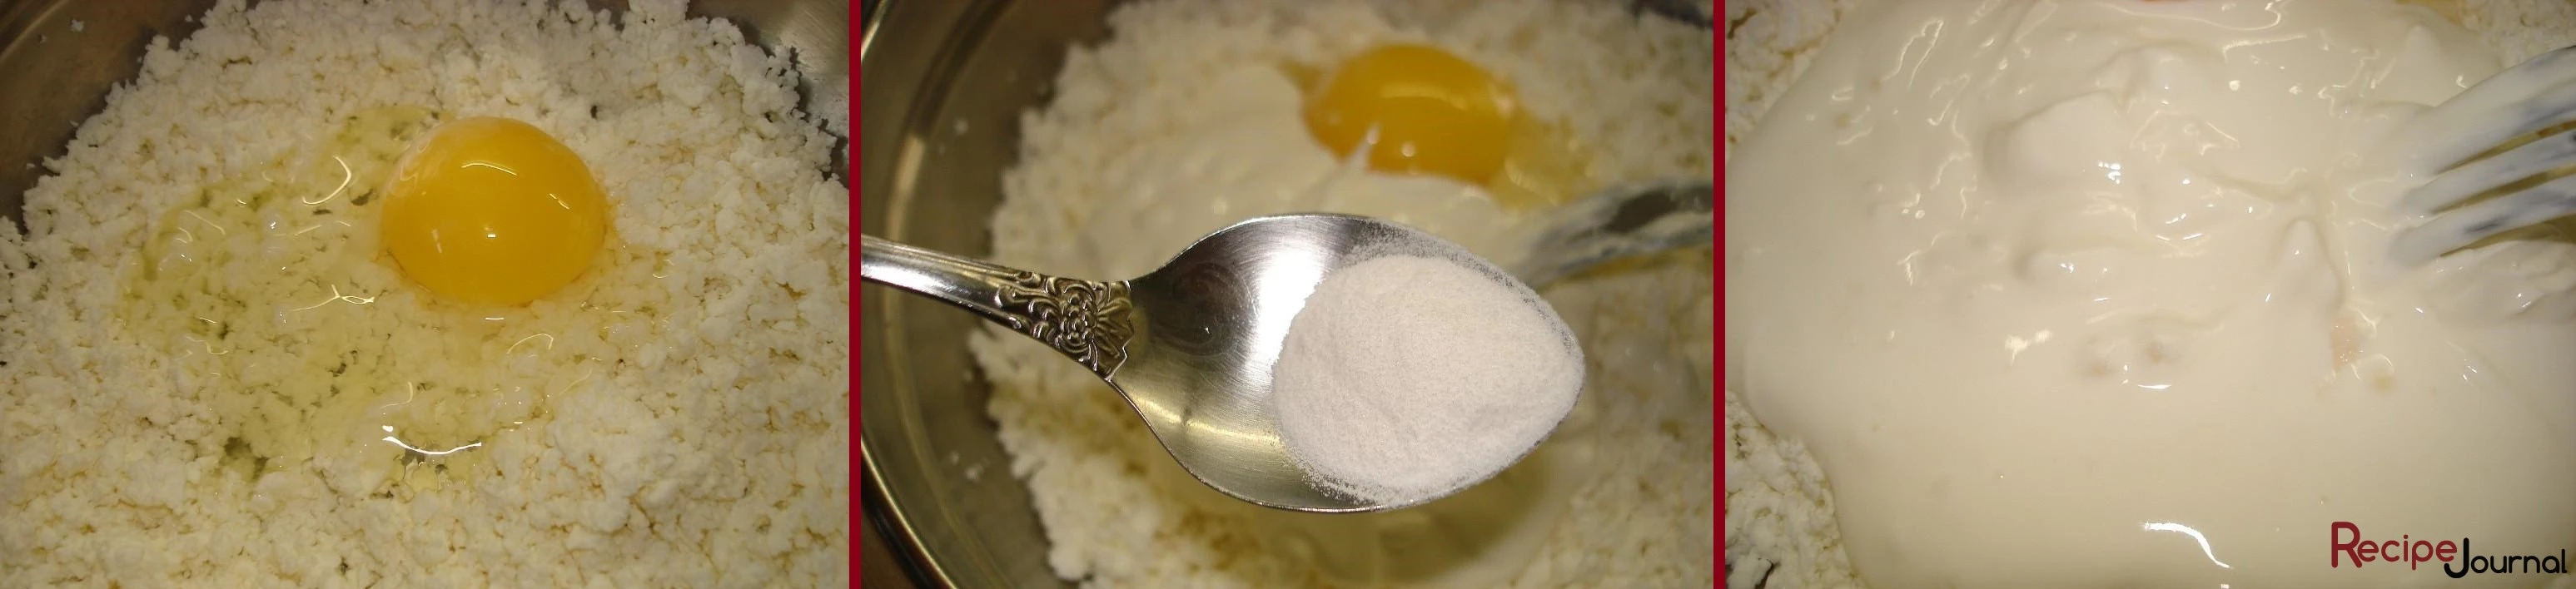 Для теста в творог вбиваем яйцо, сметану. Затем в сметану соду, чтобы погасилась. Солим и добавляем сахар.